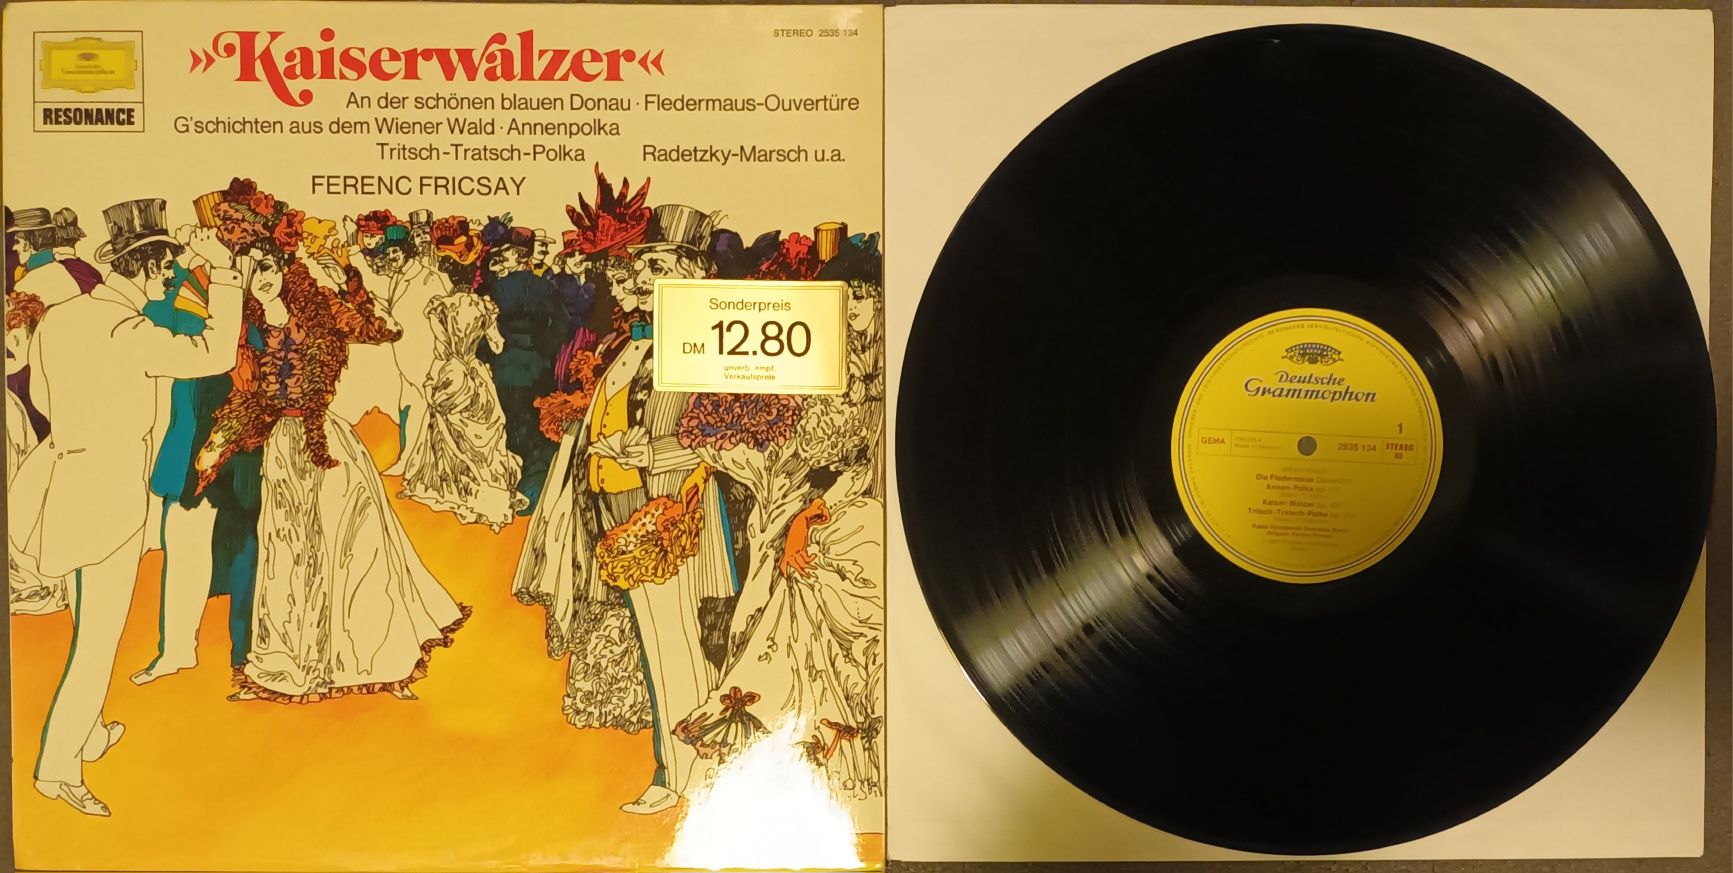 Płyta winylowa  Walce Straussa "Kaiserwalzer" Deutsche  Grammophon